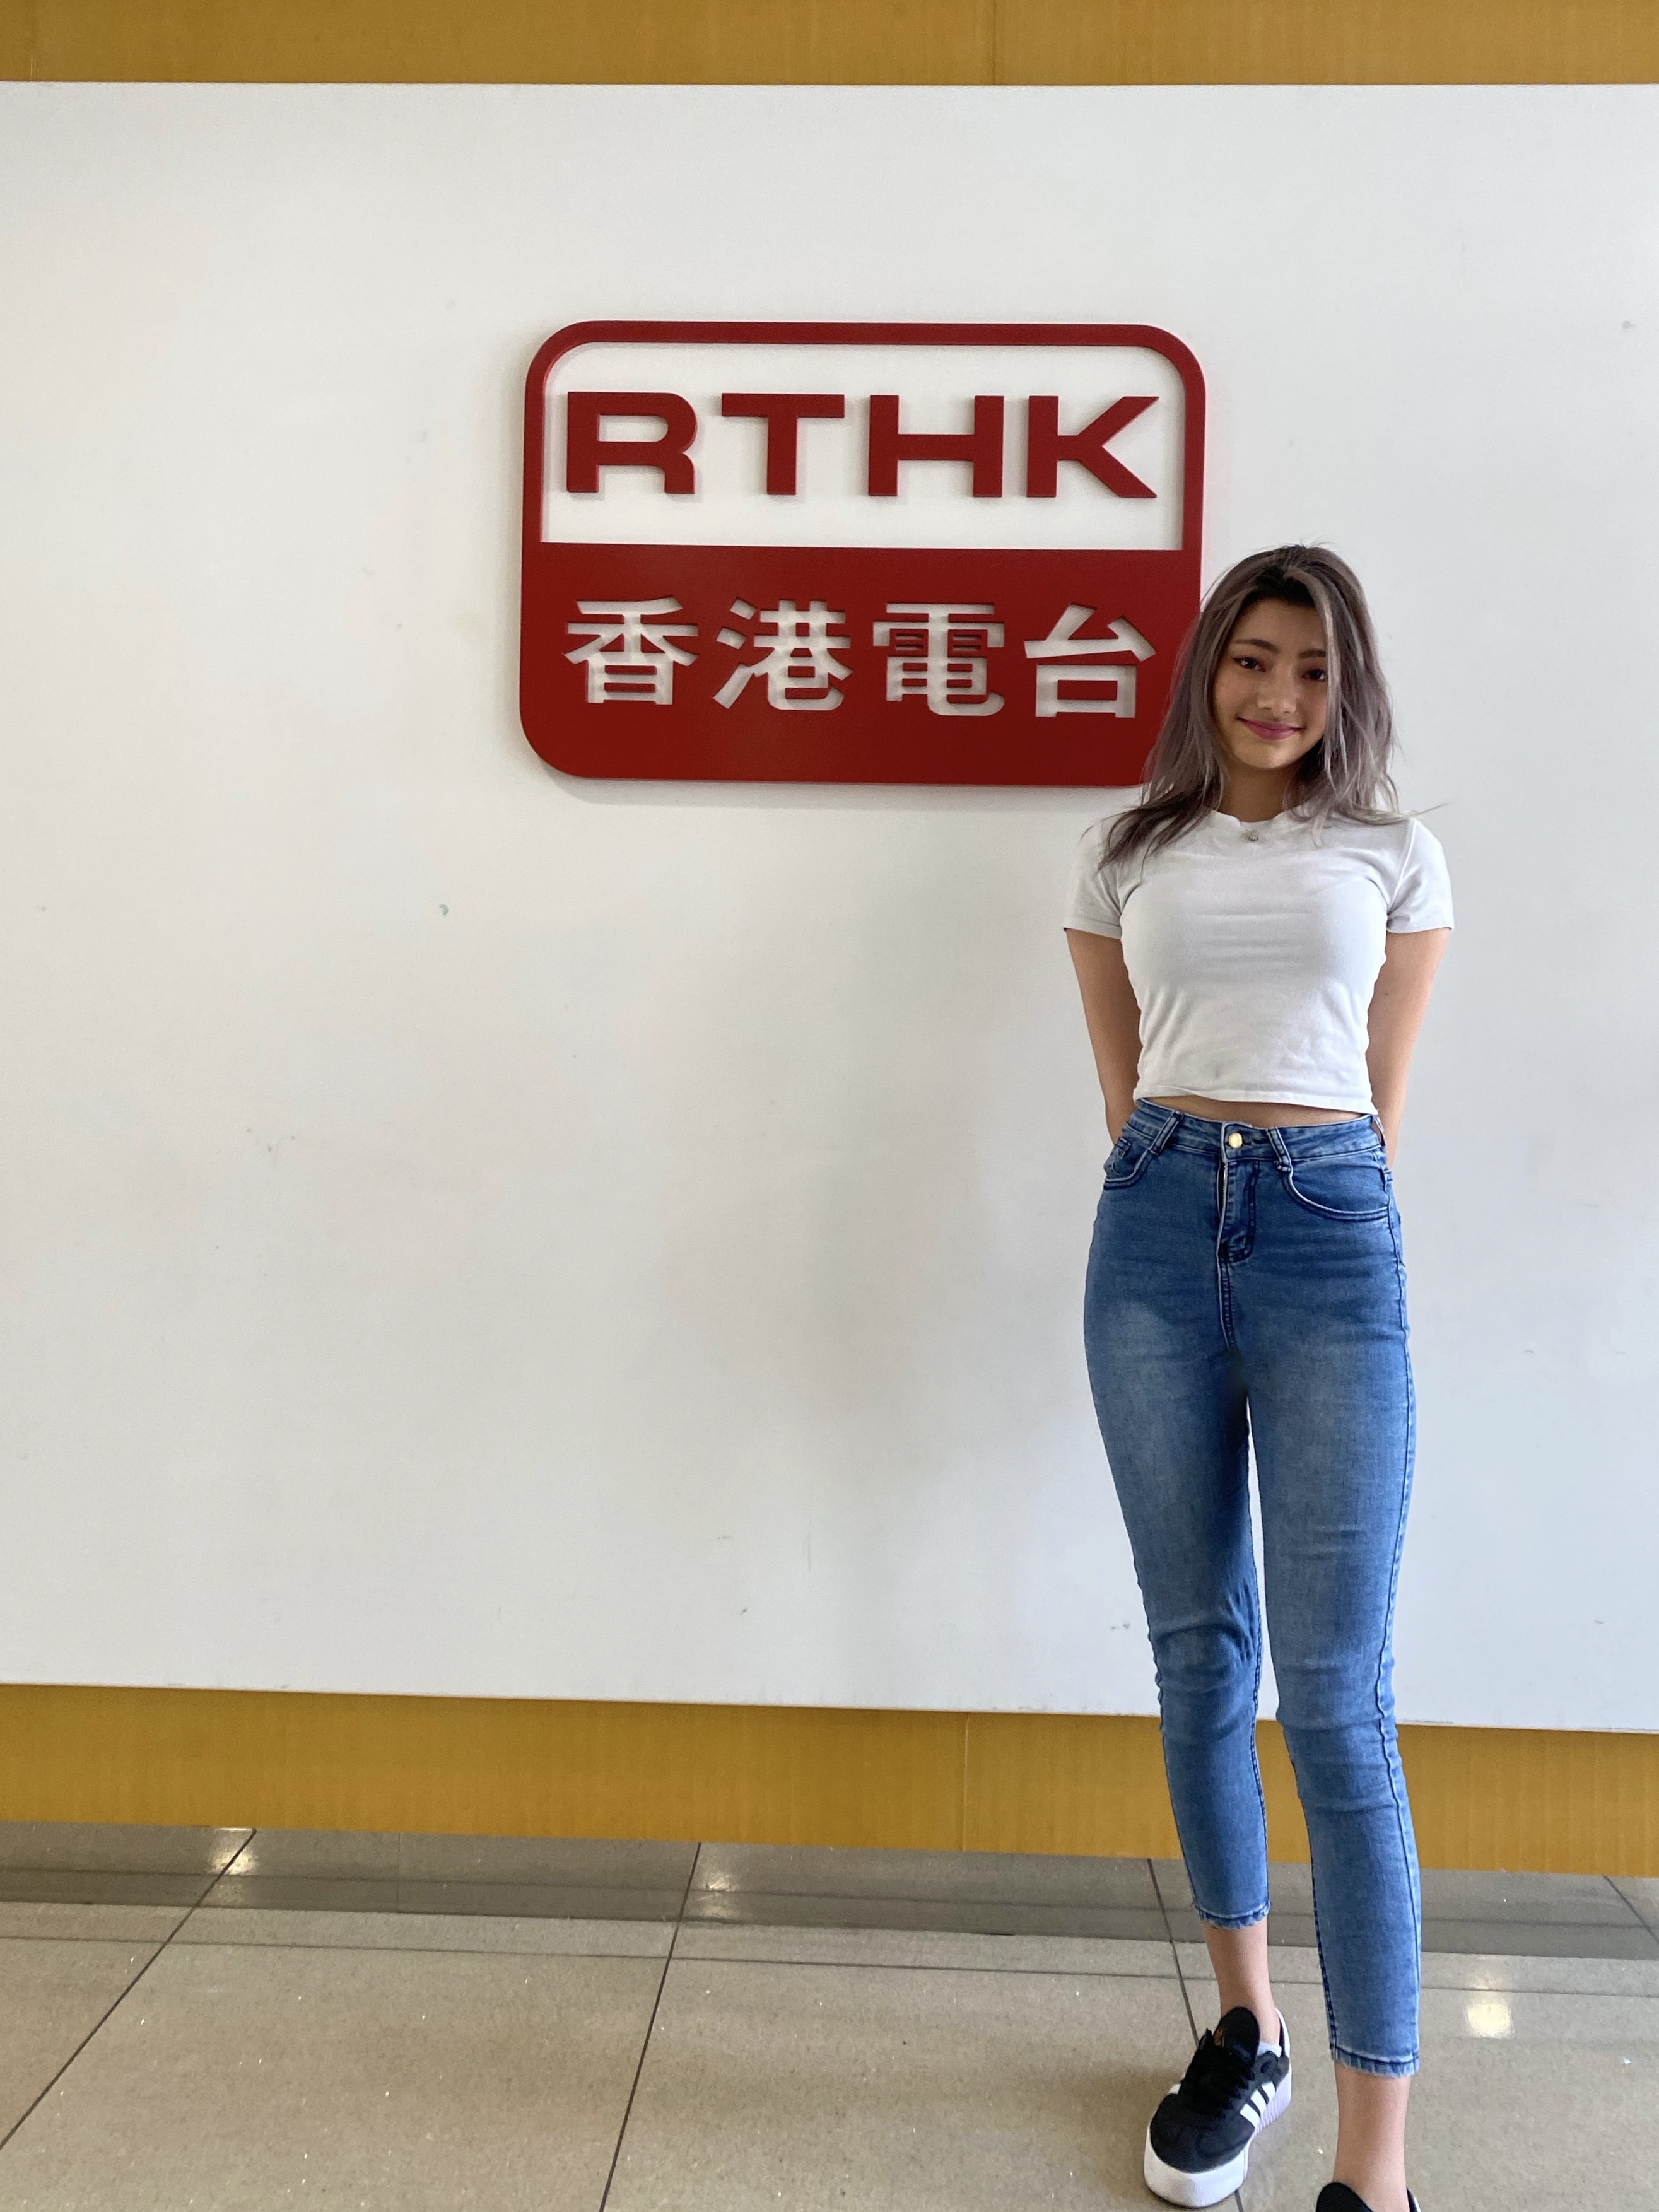 網紅KOL媒體報導Ika 艾卡: 香港電台第五台 -夏而